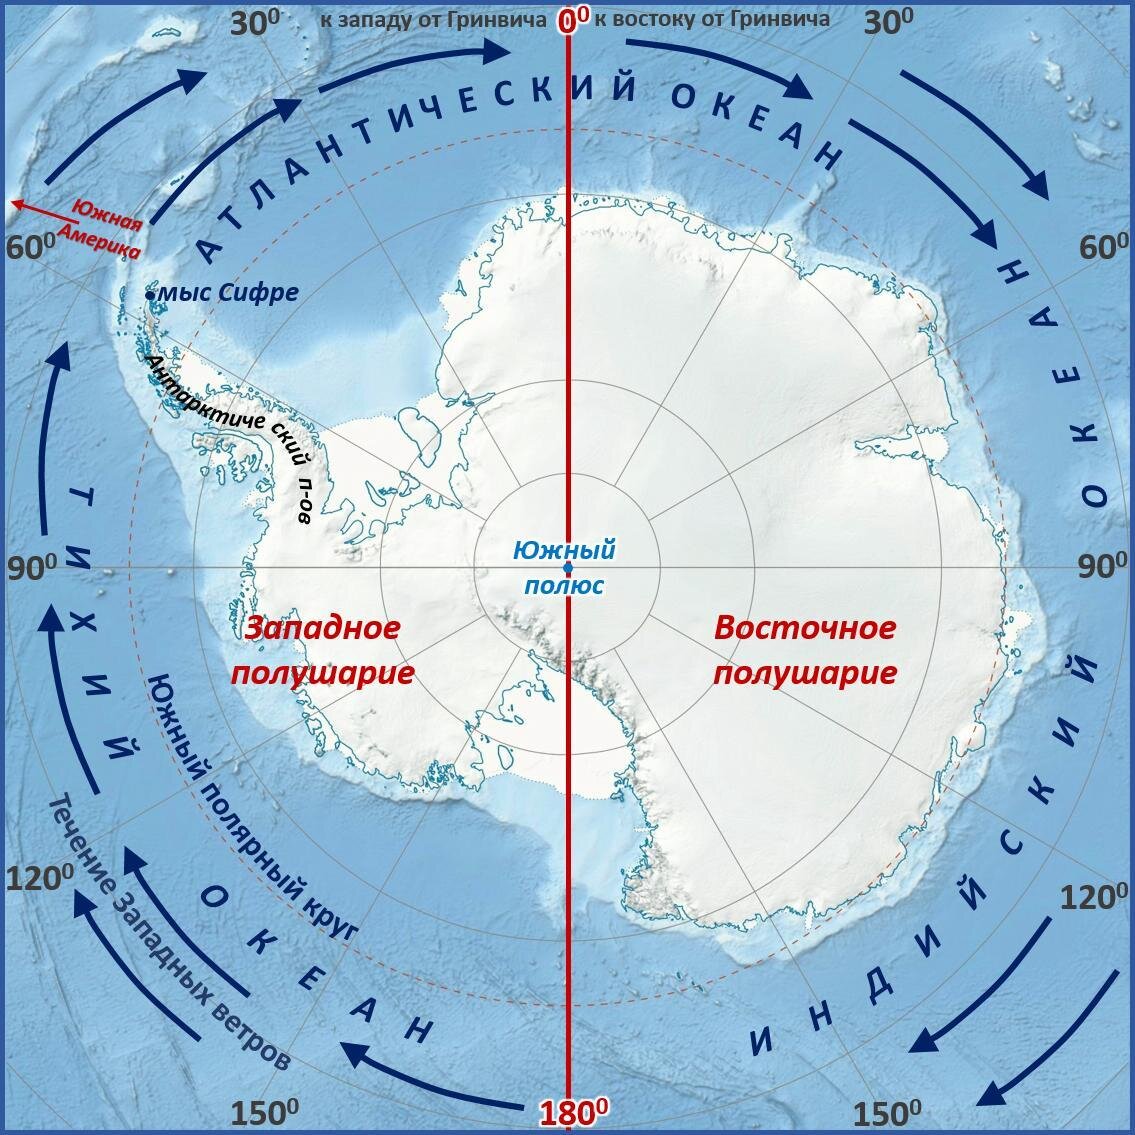 Мыс Сифре на карте Антарктиды. Моря: Амундсена, Беллинсгаузена, Росса, Уэдделла.. Мыс Сифре Антарктида. Южный полюс на карте Антарктиды. Течения восточных ветров